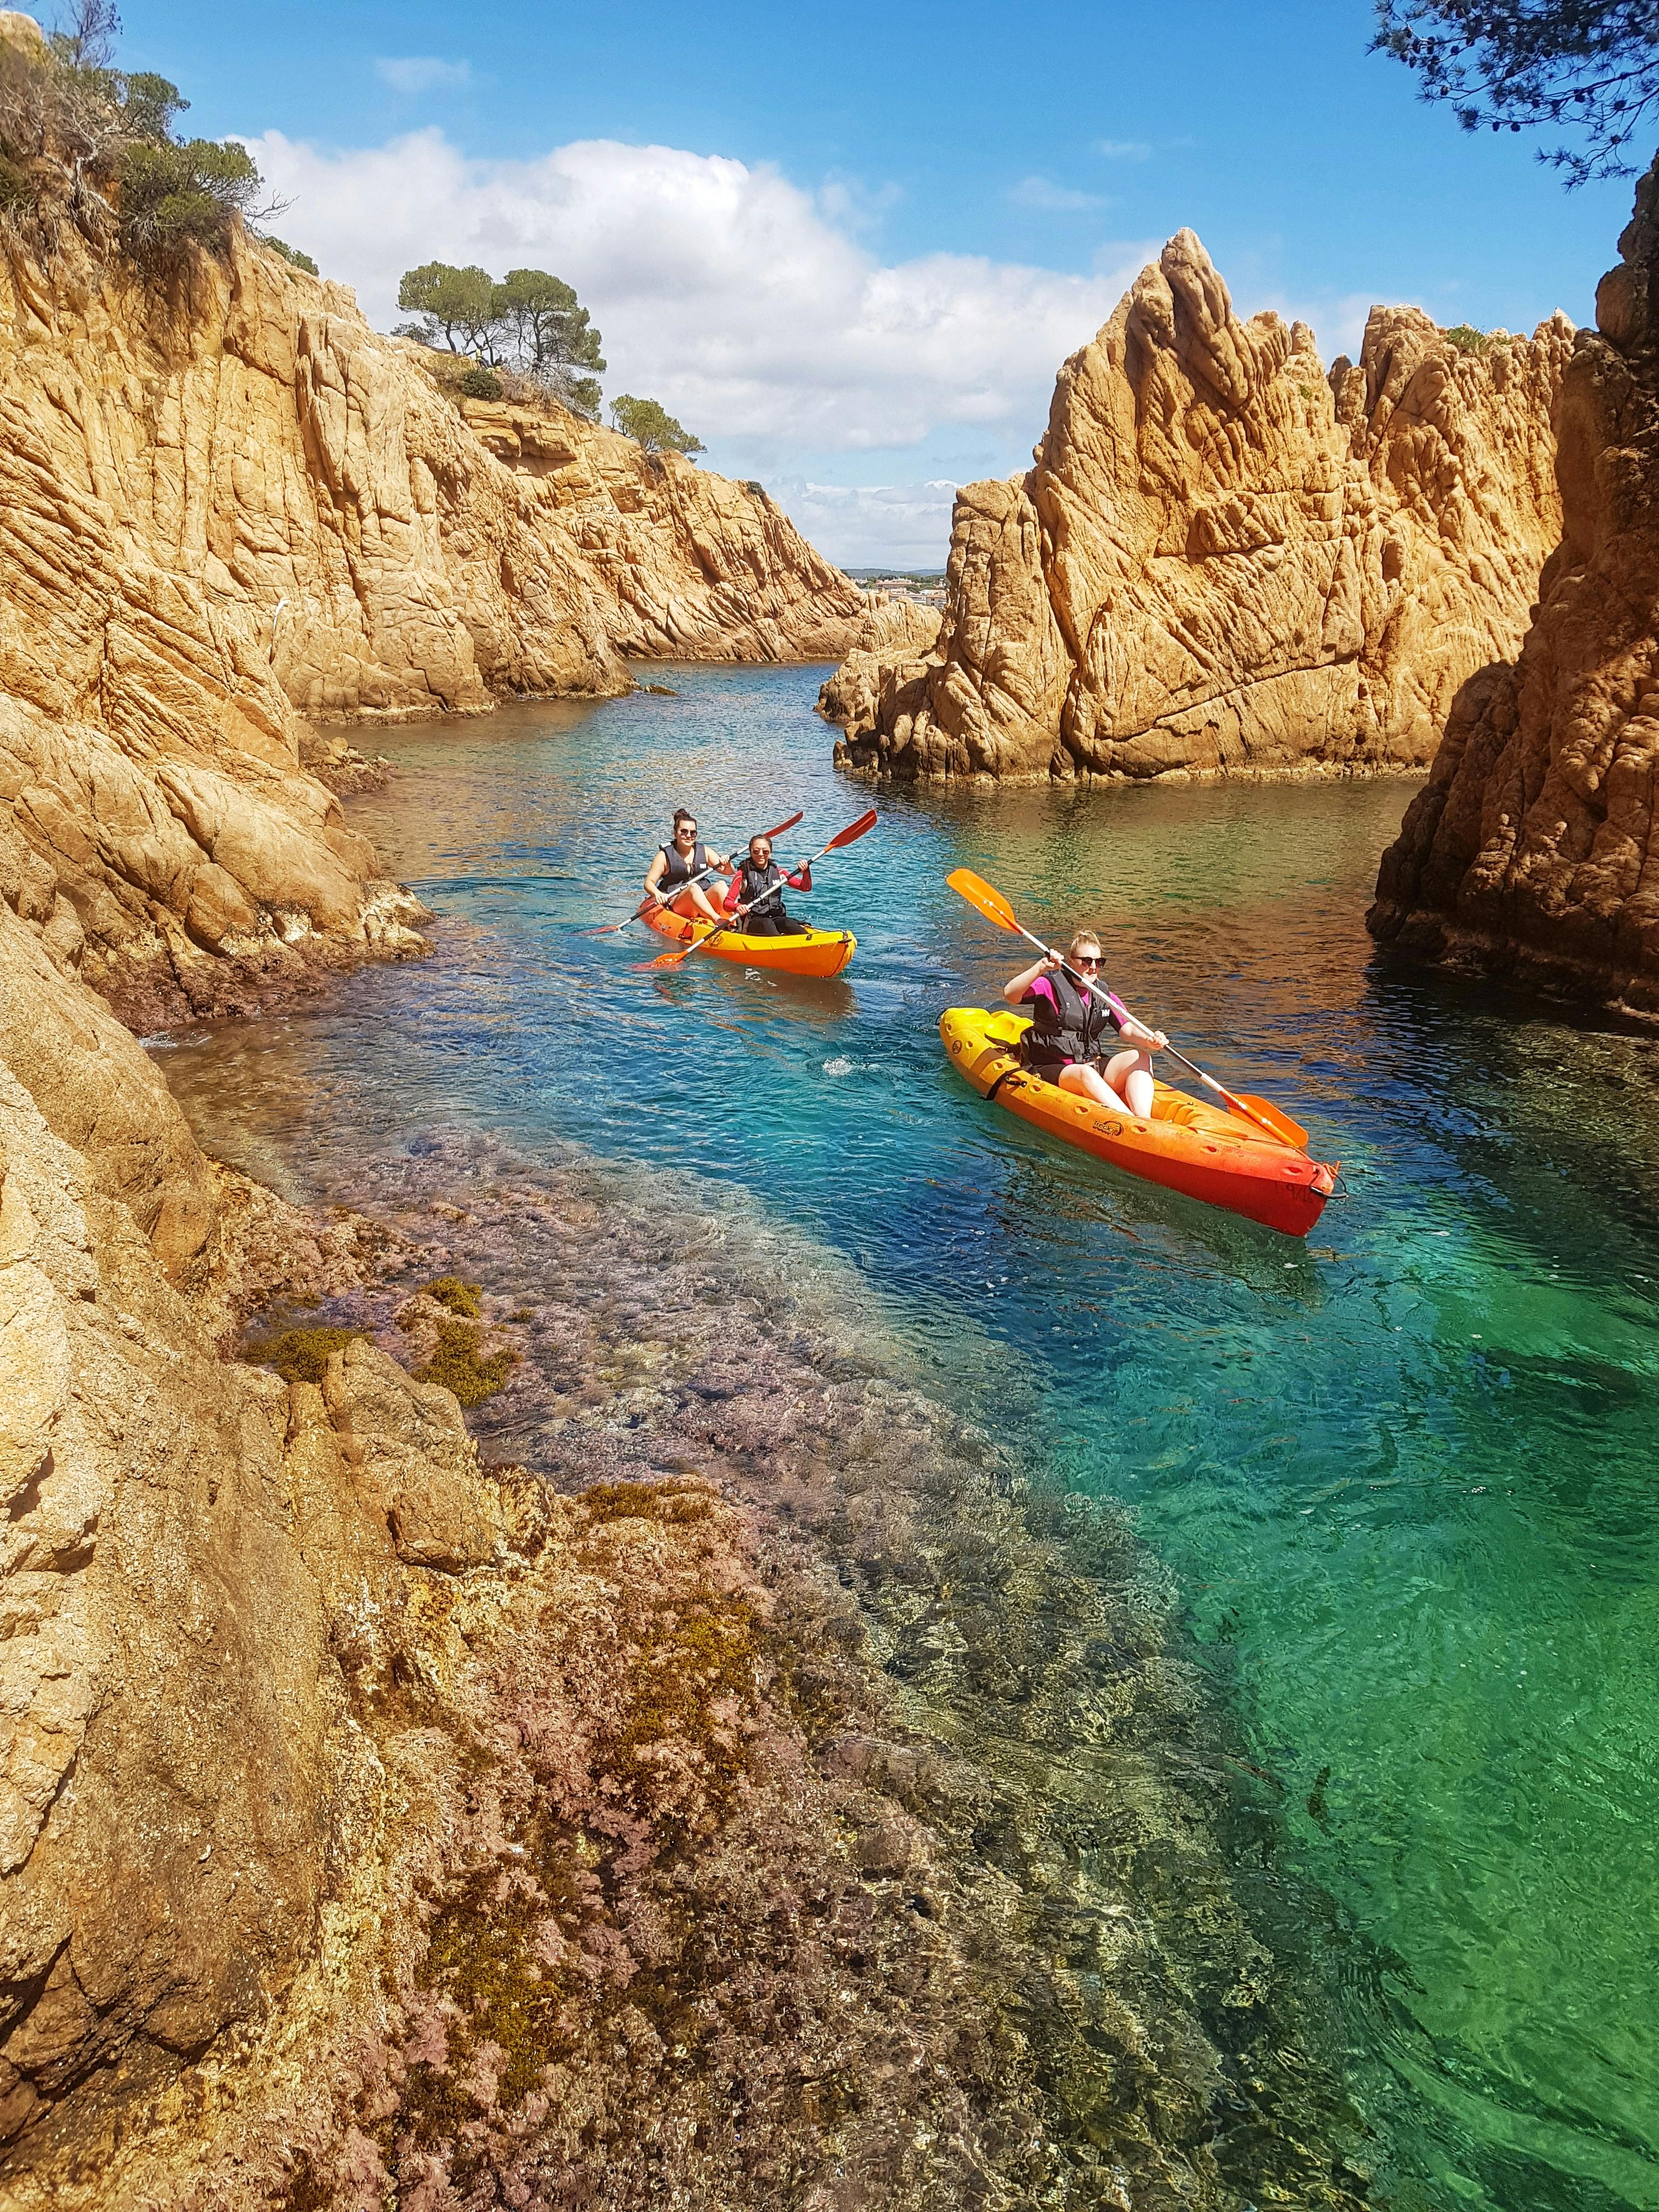 Image - Kayaking & Cliff Jumping Costa Brava_491695